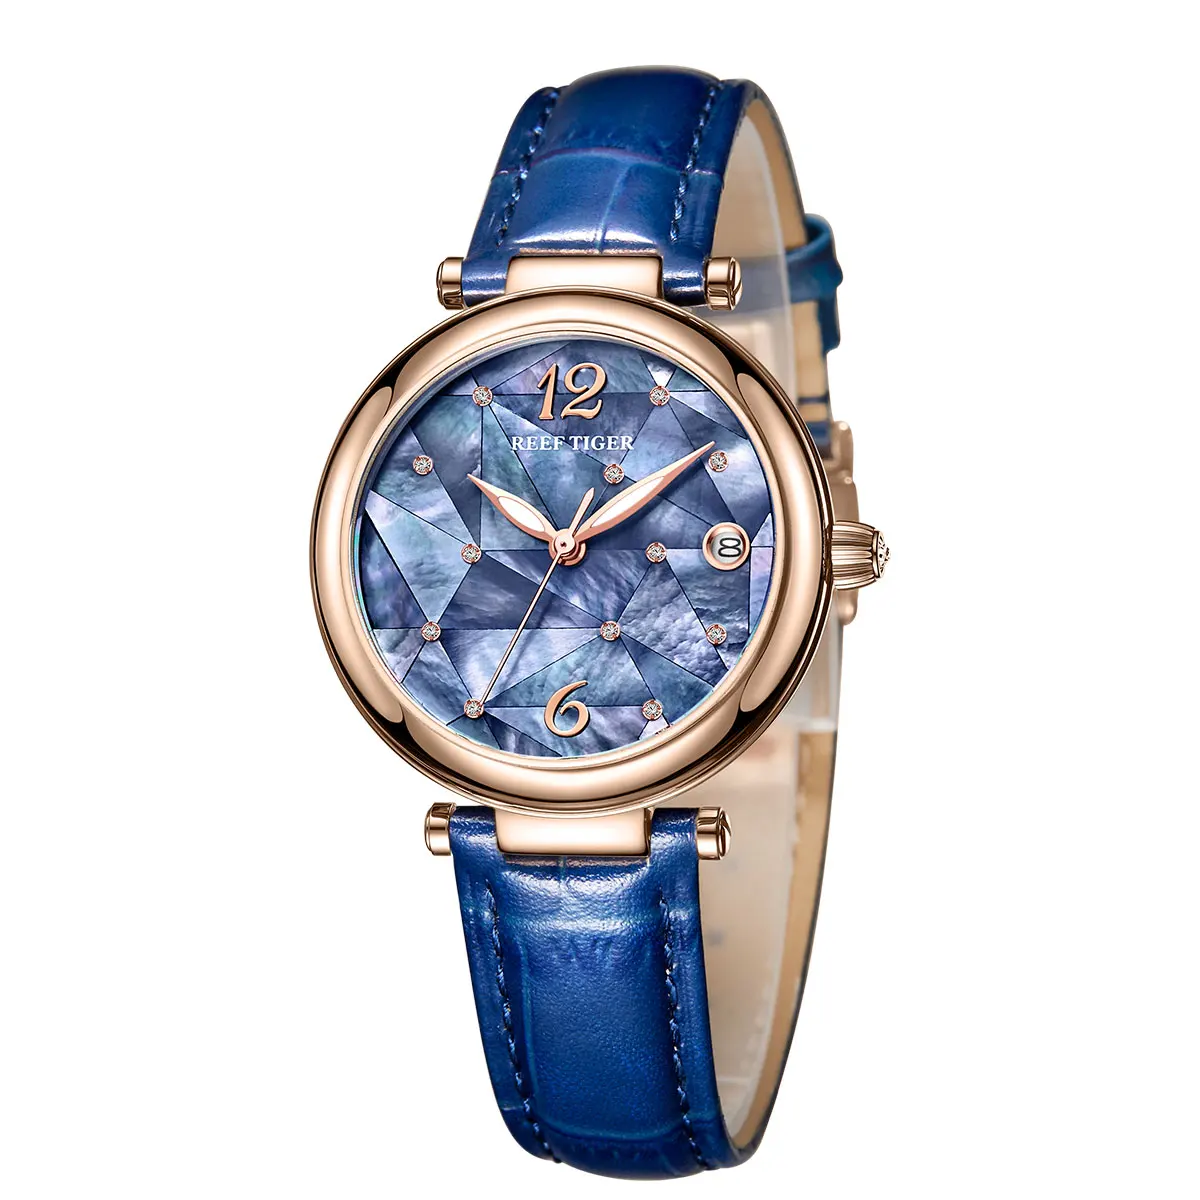 Риф Тигр/RT дизайн модные женские часы розовое золото синий циферблат механические часы кожаный ремешок Femme RGA1584